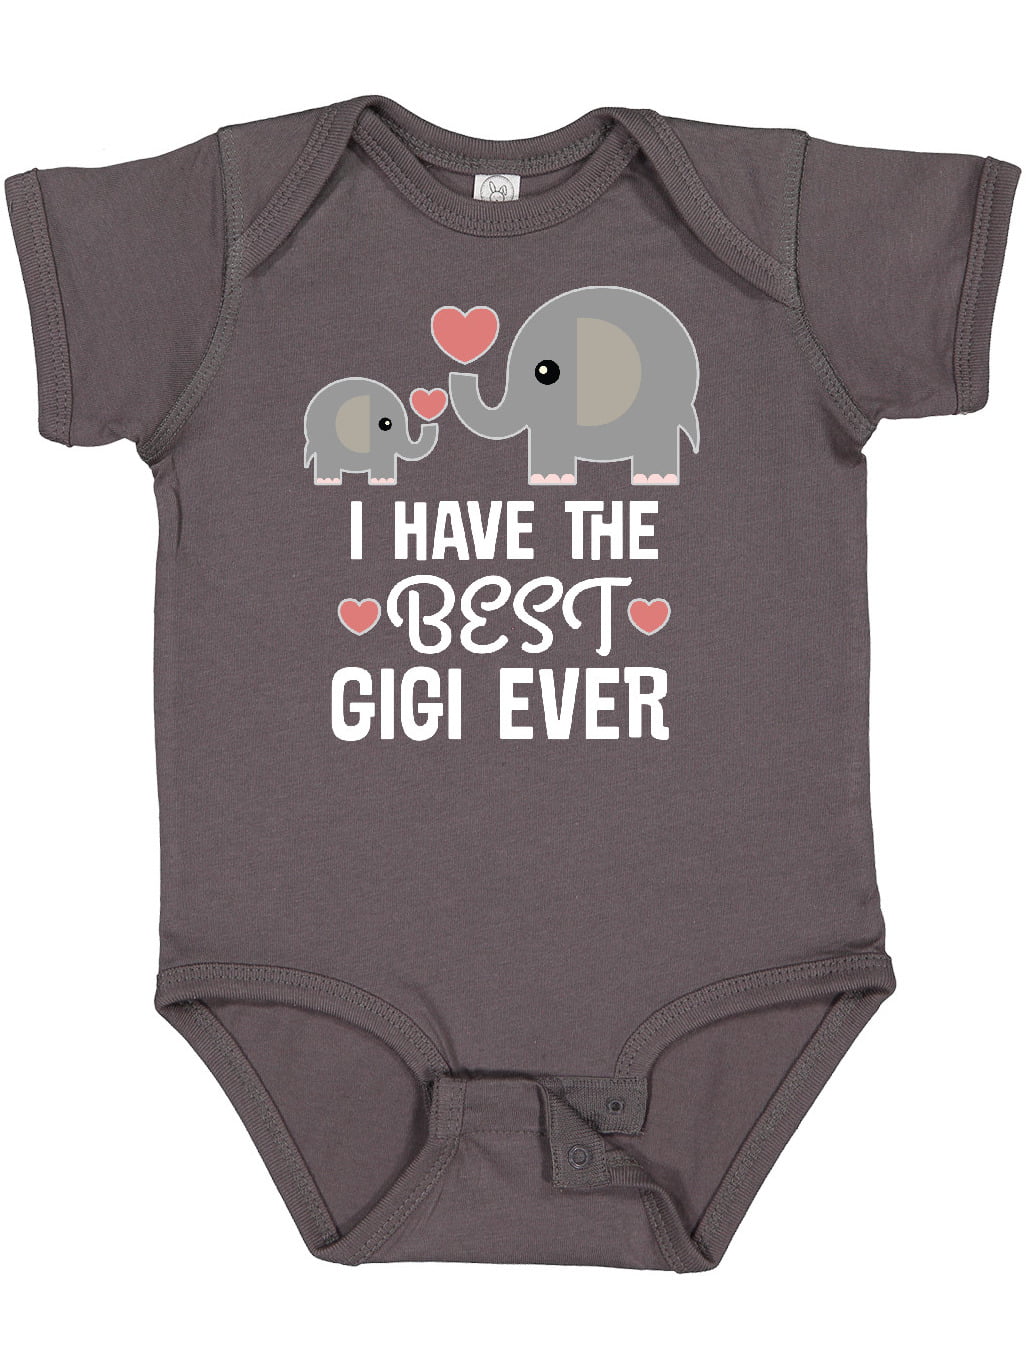 Grandma Nana Gigi Was Here Cute Shower Gift Newborn Baby Boy Girl Infant Romper 